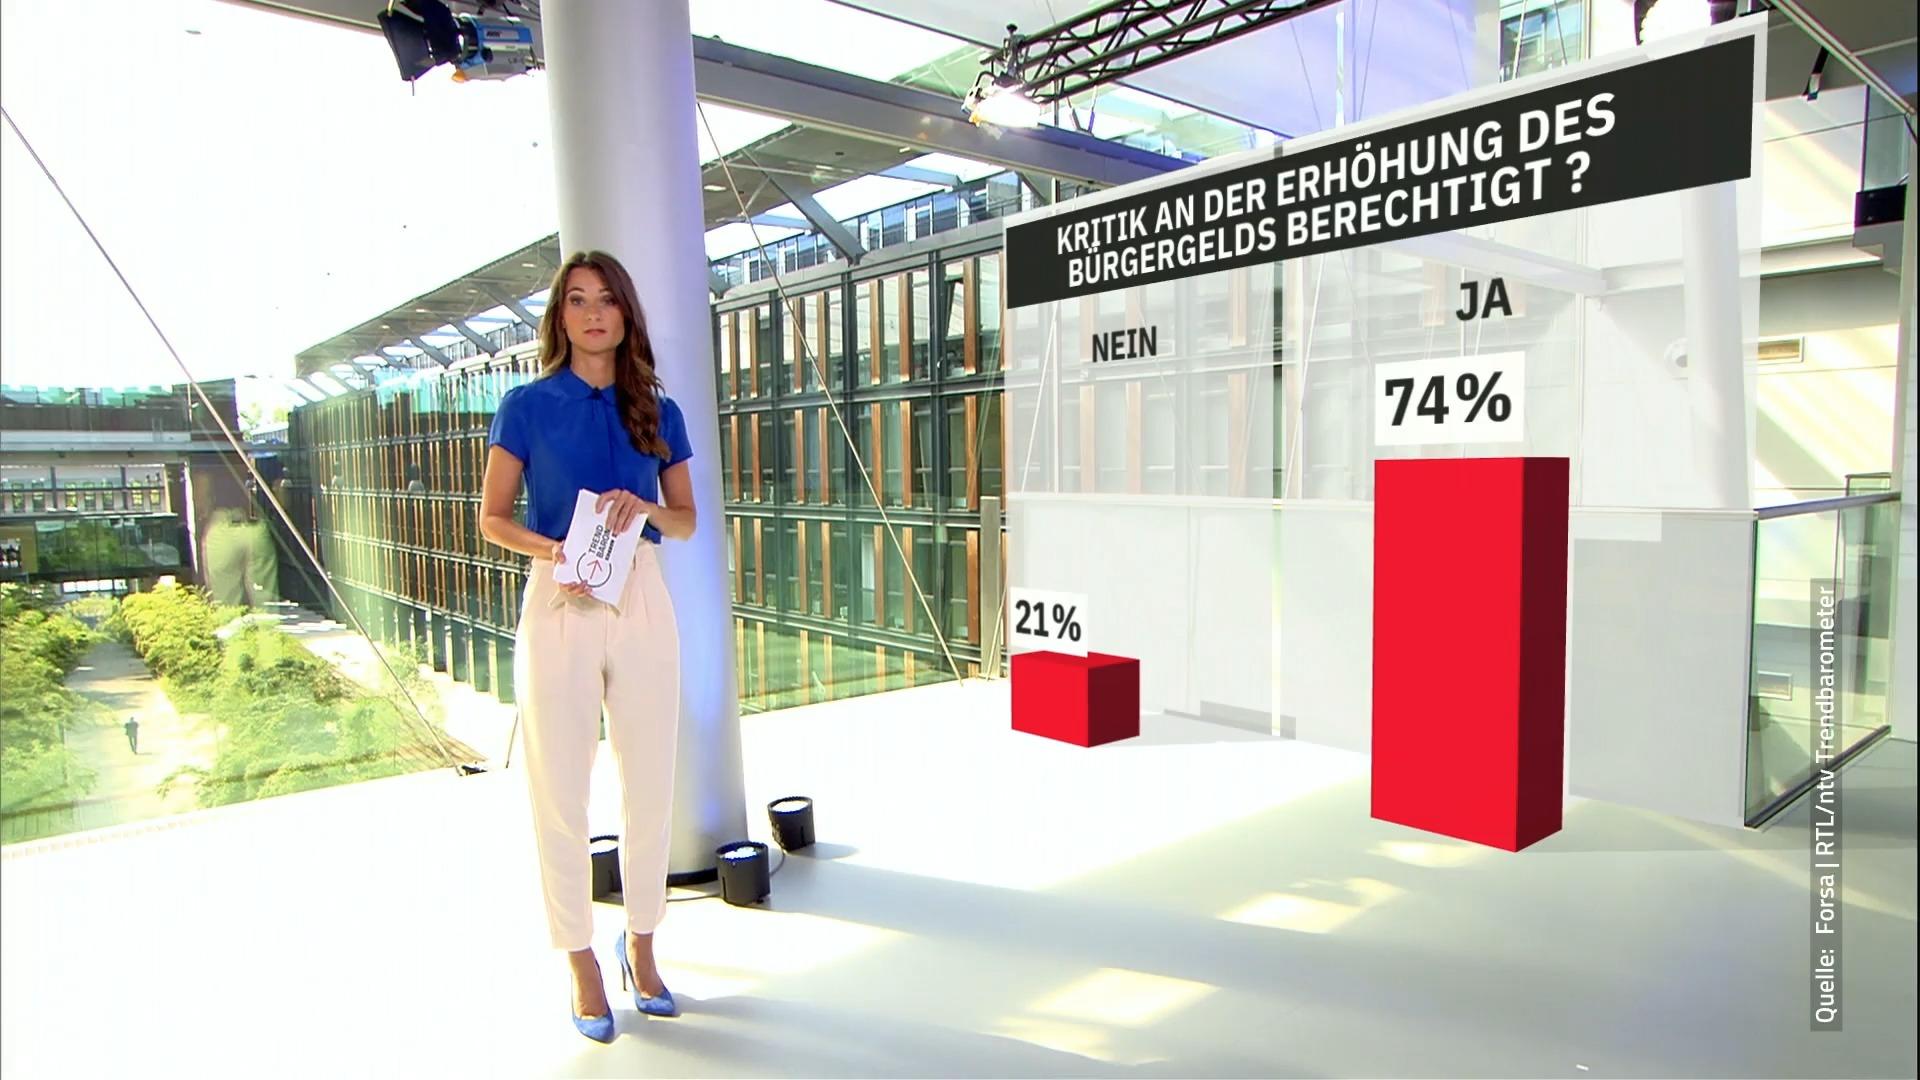 Das denken die Deutschen über die Erhöhung RTL/ntv-Trendbarometer zum Bürgergeld